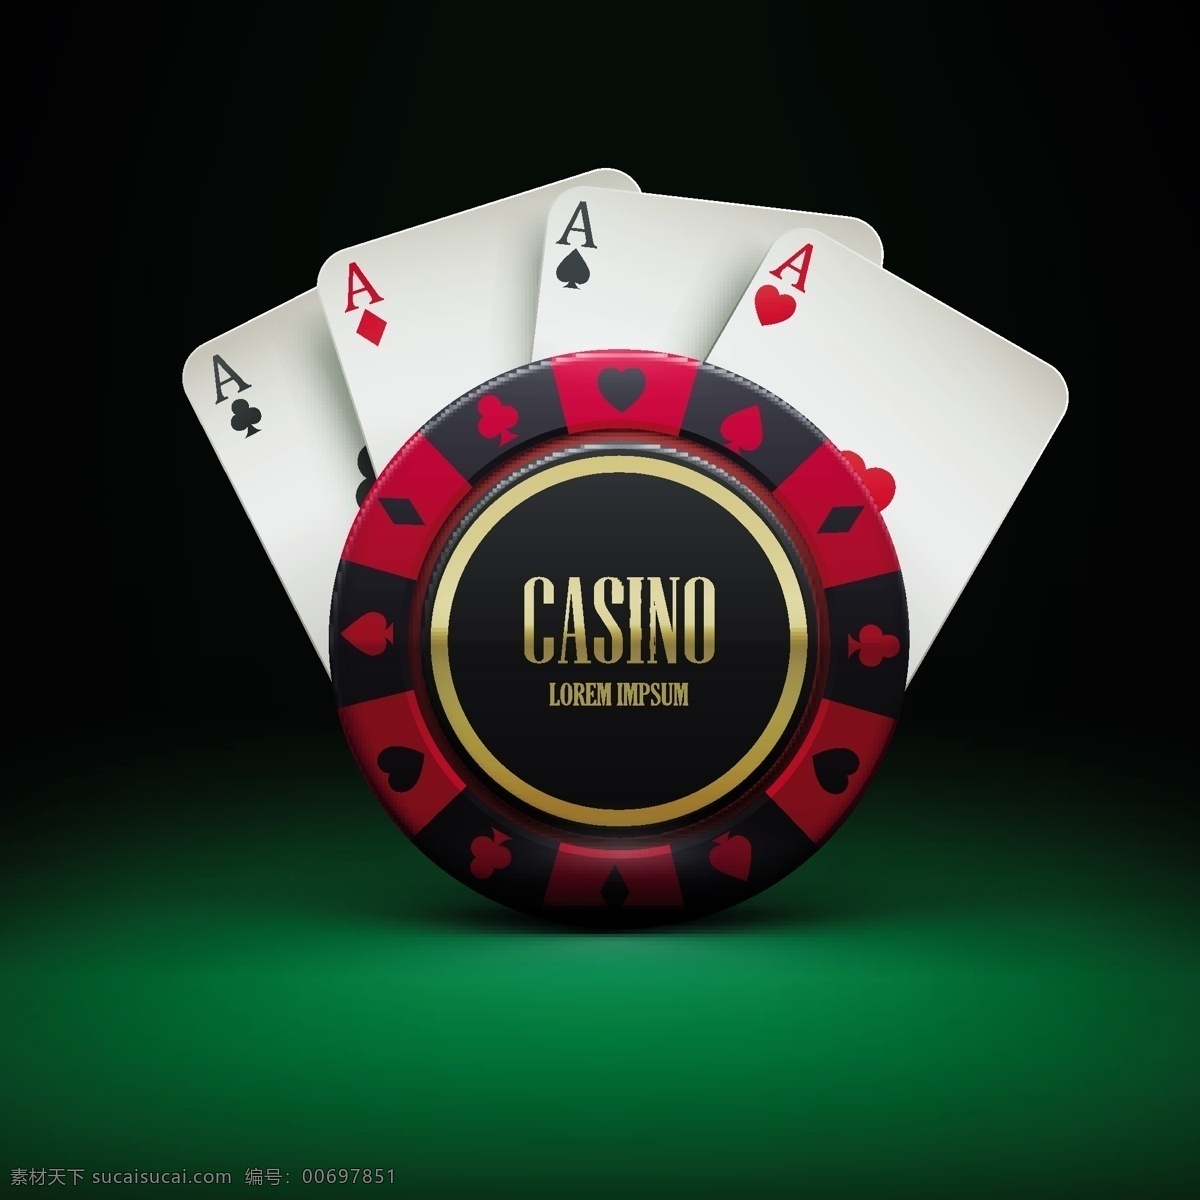 筹码 赌博 赌场 赌桌赌博 赌博筹码 赌博用品 赌具 扑克 展板海报